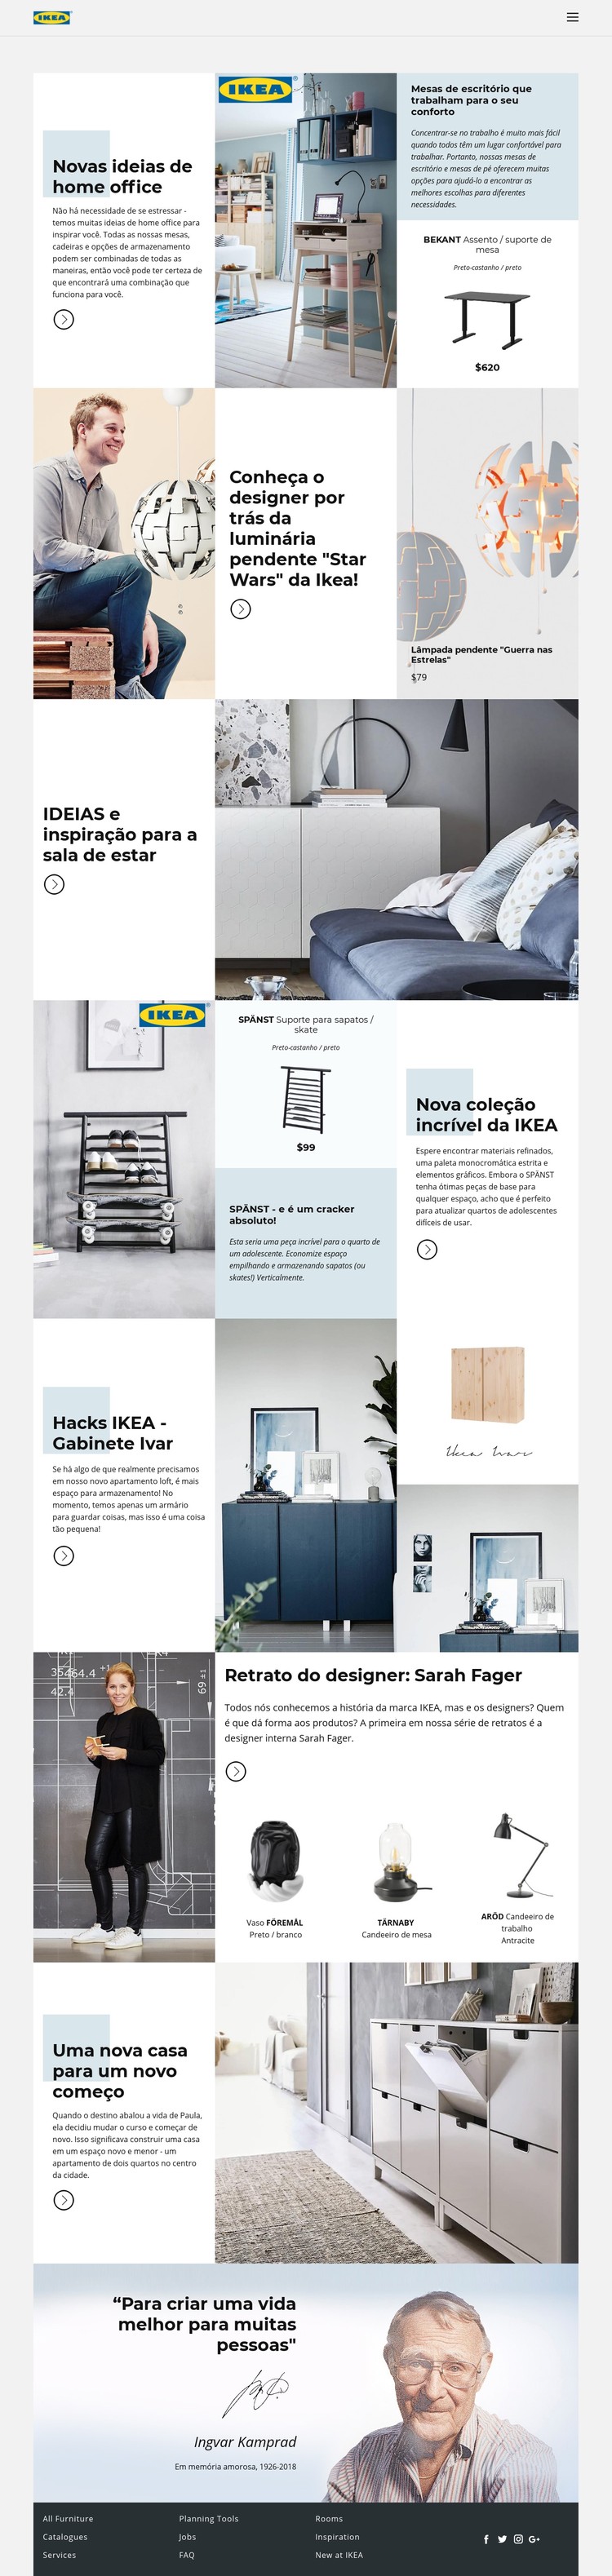 Inspiração da IKEA Template CSS